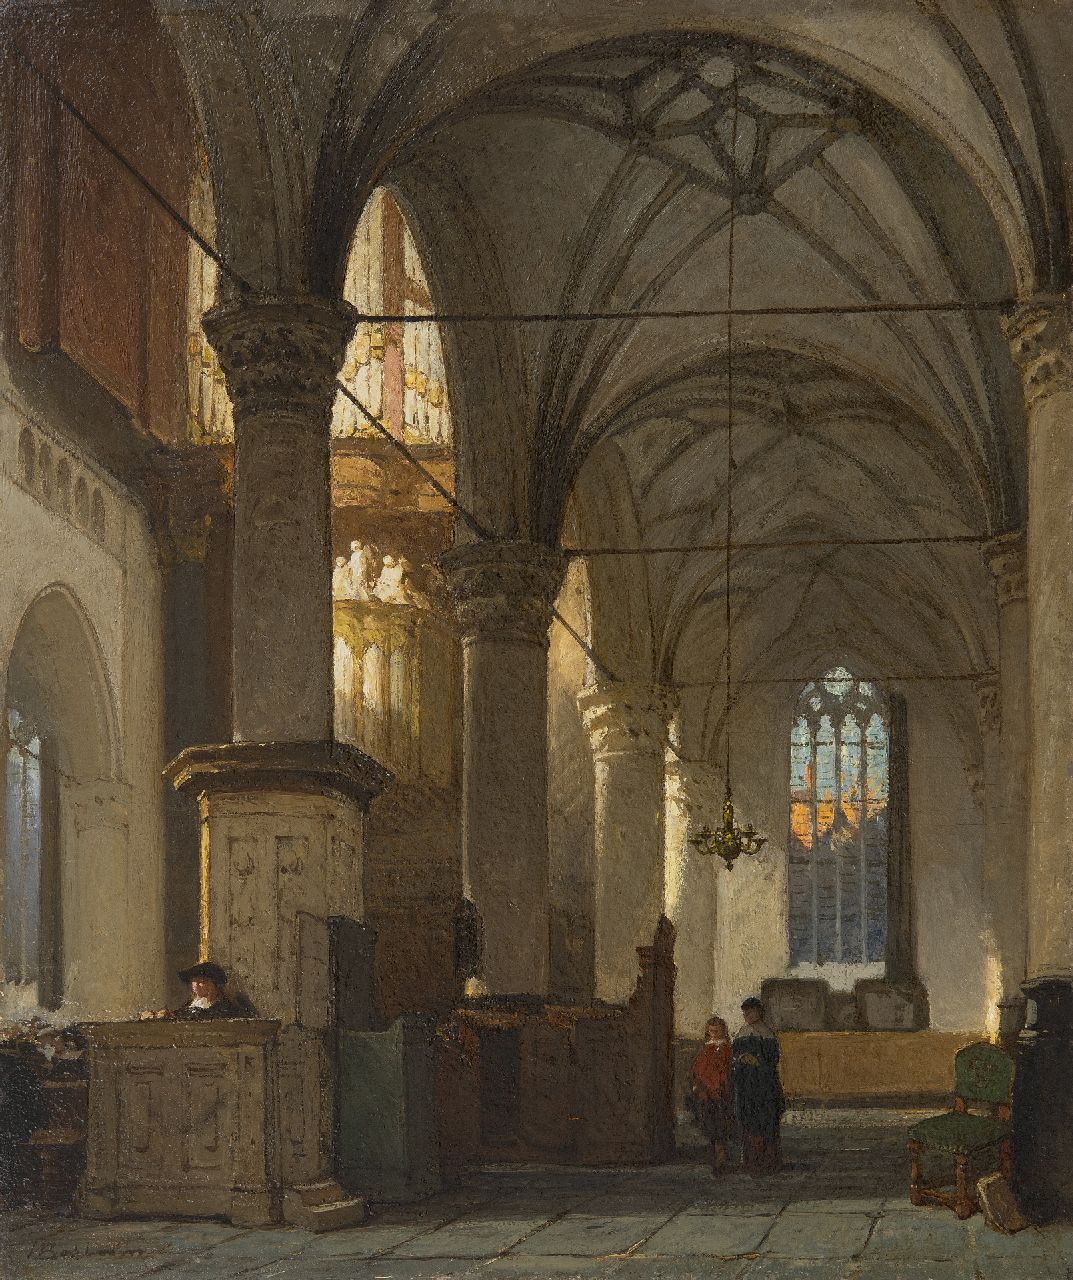 Bosboom J.  | Johannes Bosboom | Schilderijen te koop aangeboden | Interieur van de Grote of Sint-Laurenskerk in Alkmaar, olieverf op paneel 43,1 x 36,1 cm, gesigneerd linksonder